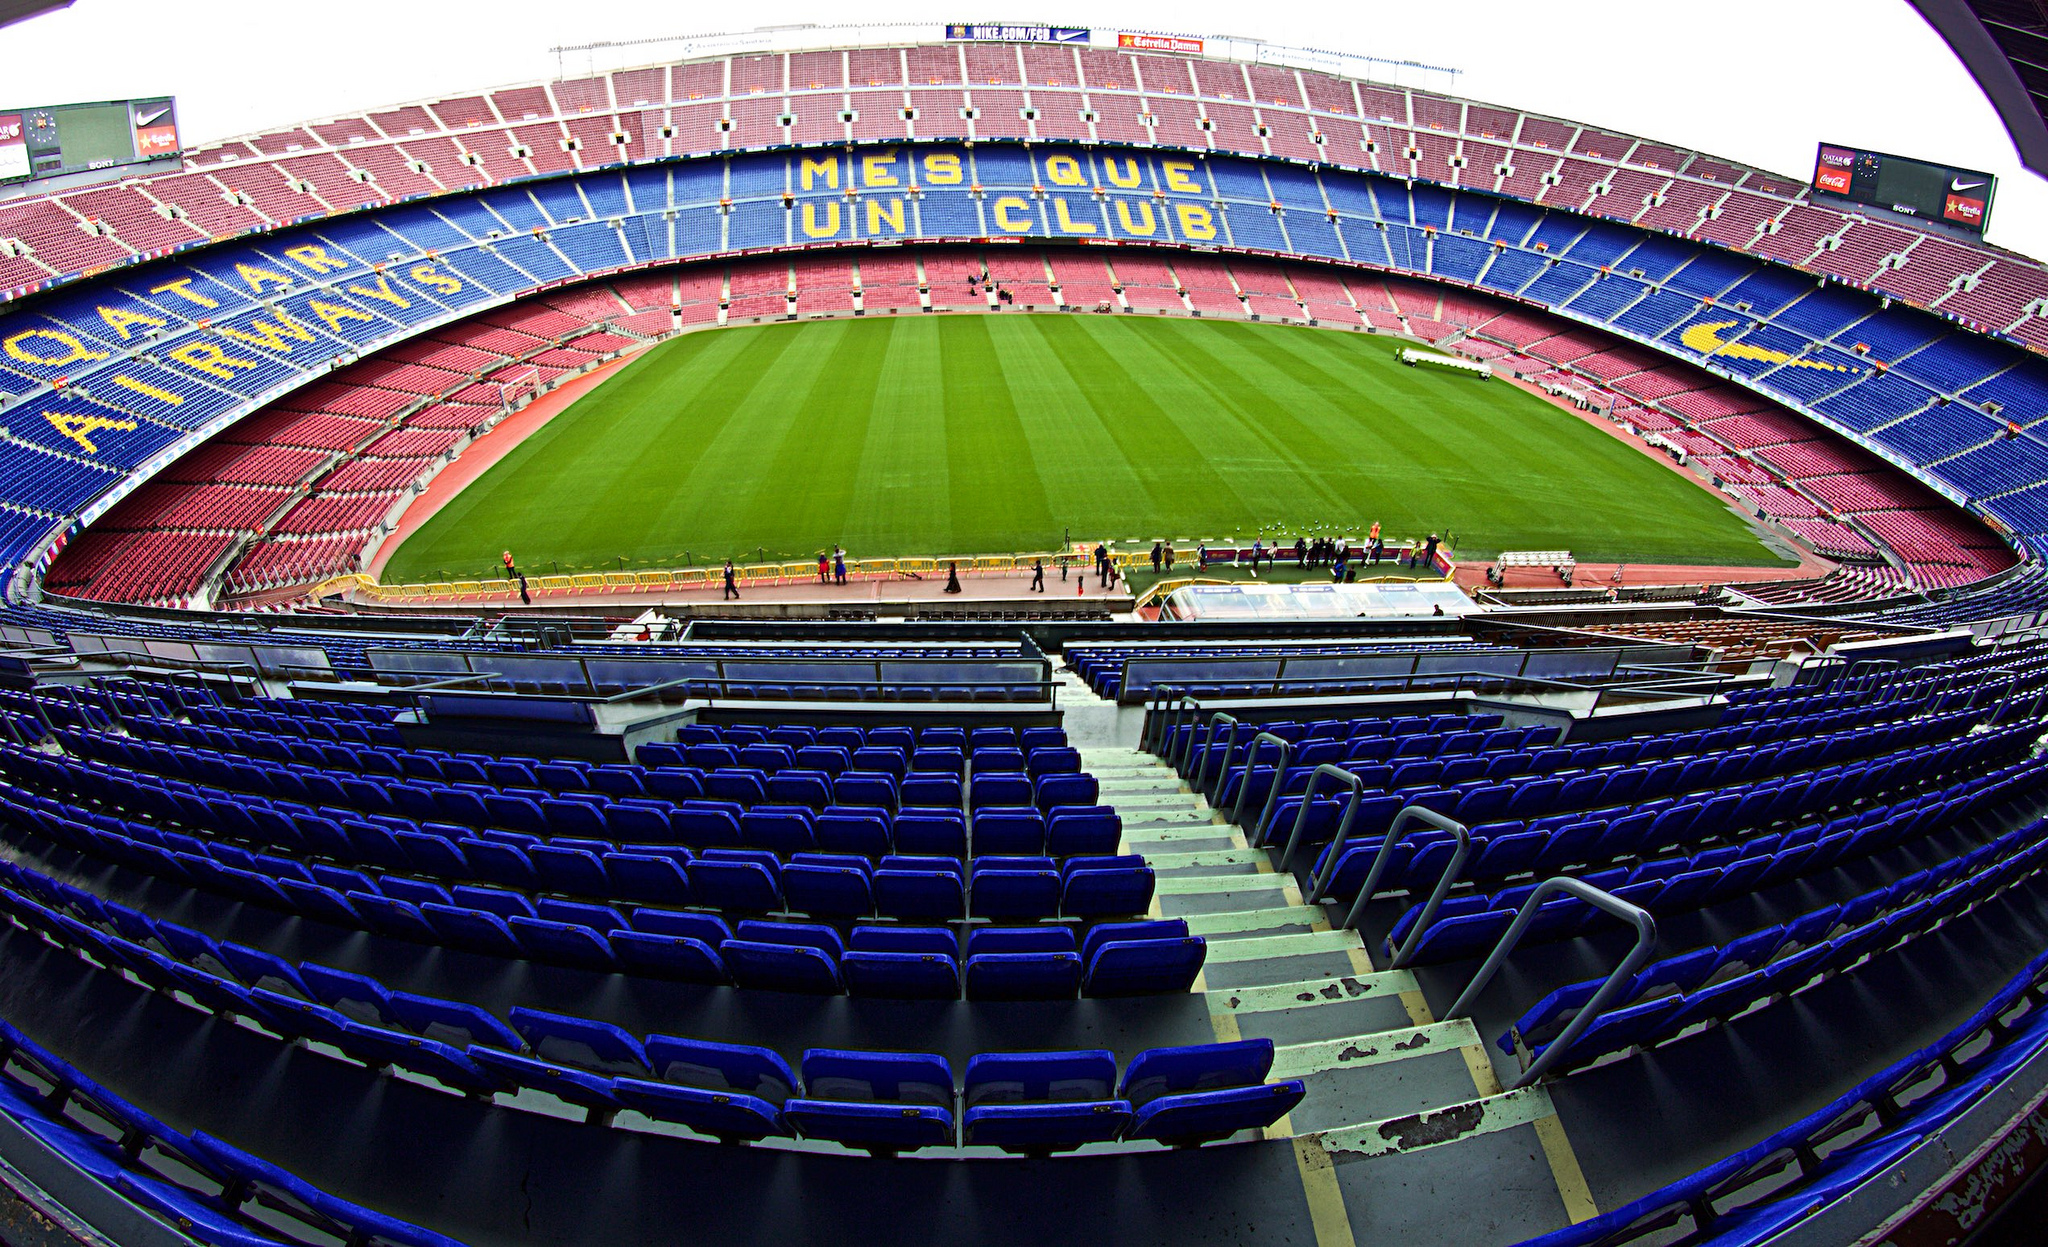 Камп нов. Камп ноу стадион. Барселона Камп ноу. Стадион Камп ноу Барселона Испания. Стадион Camp nou.